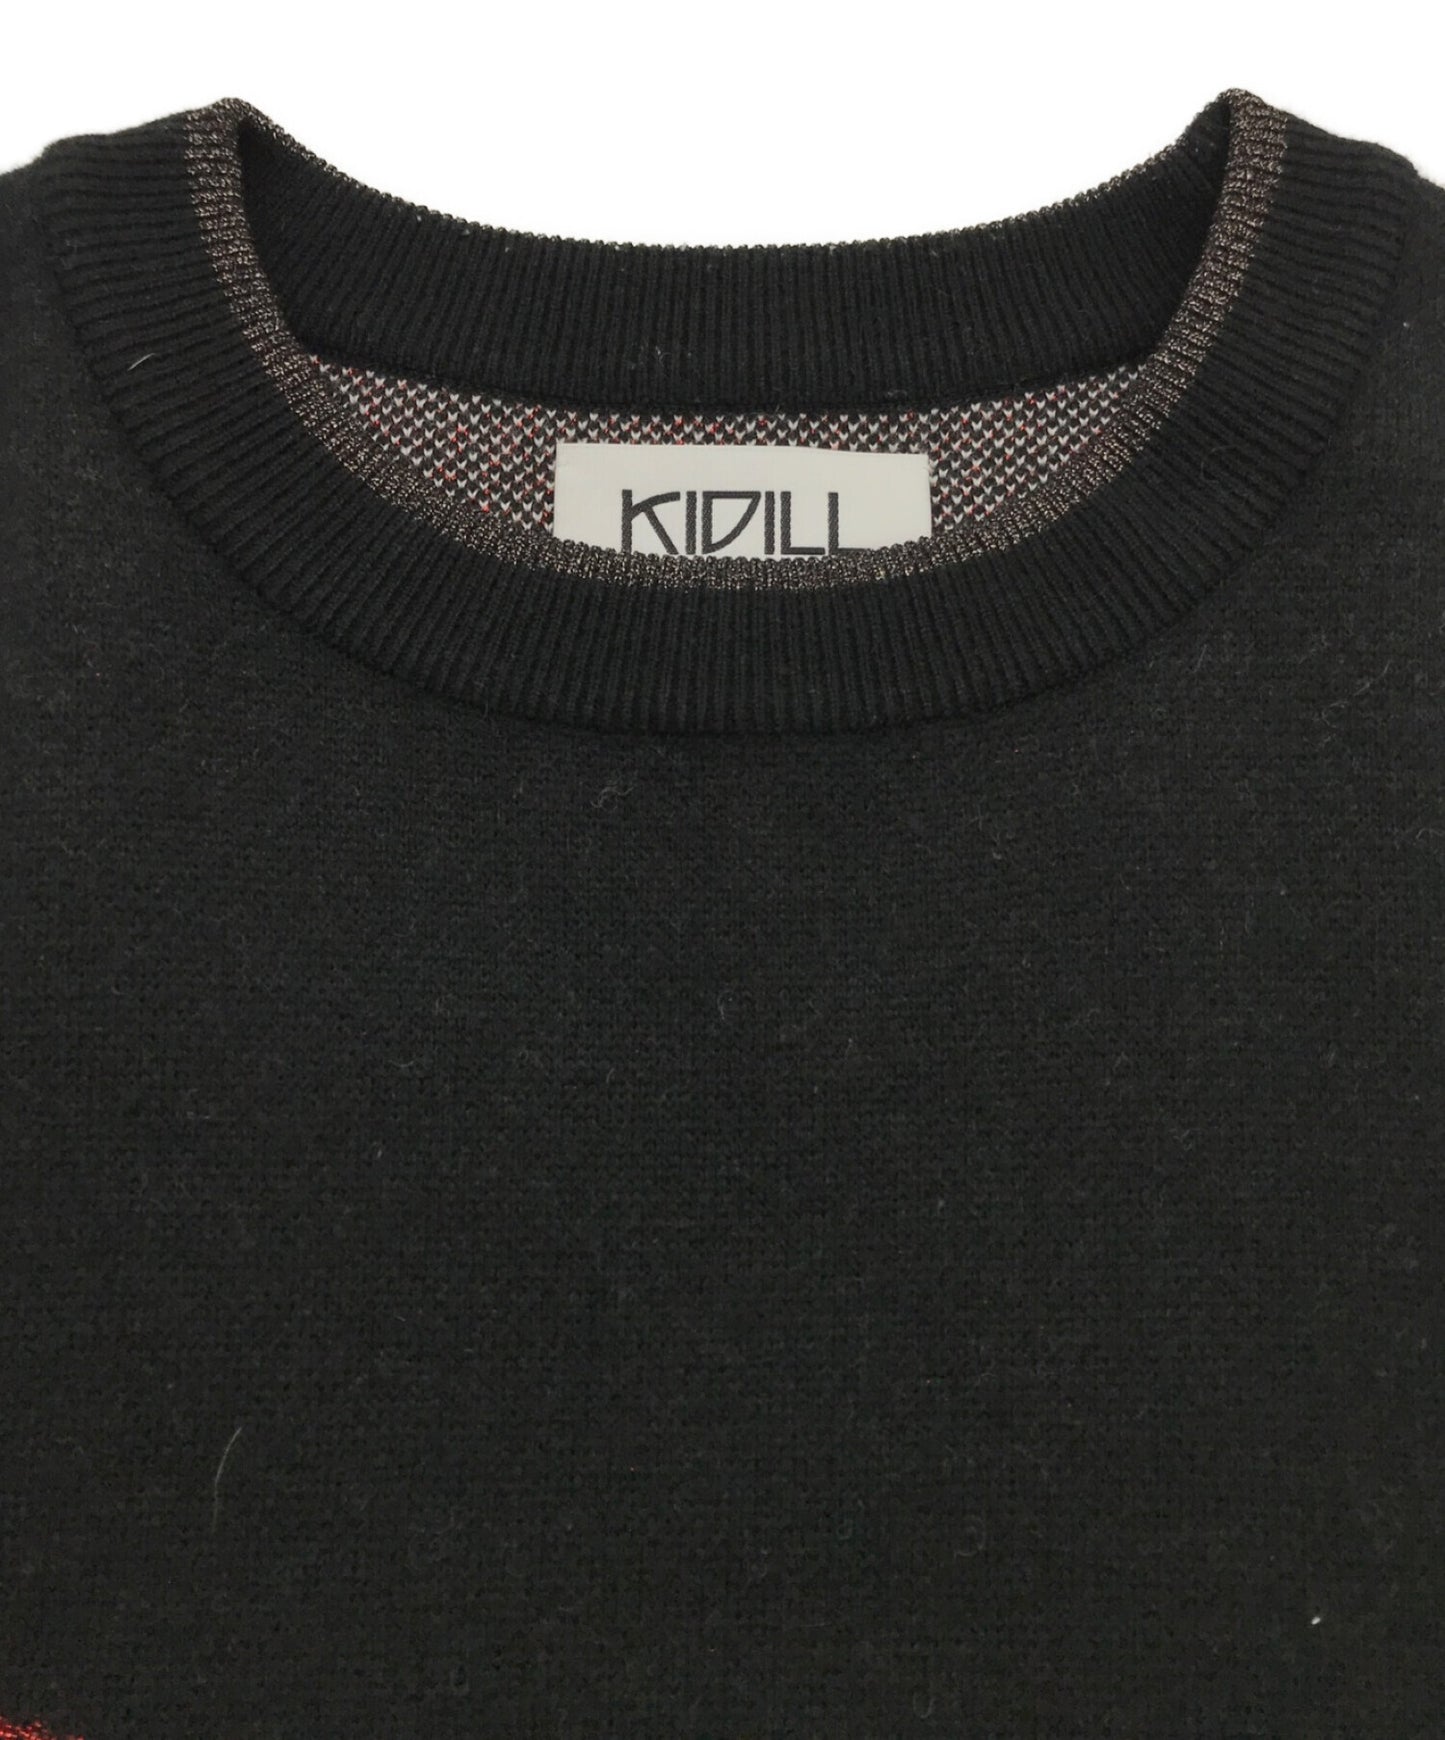 Kidill × Rurumu 드라이버 니트 KL554